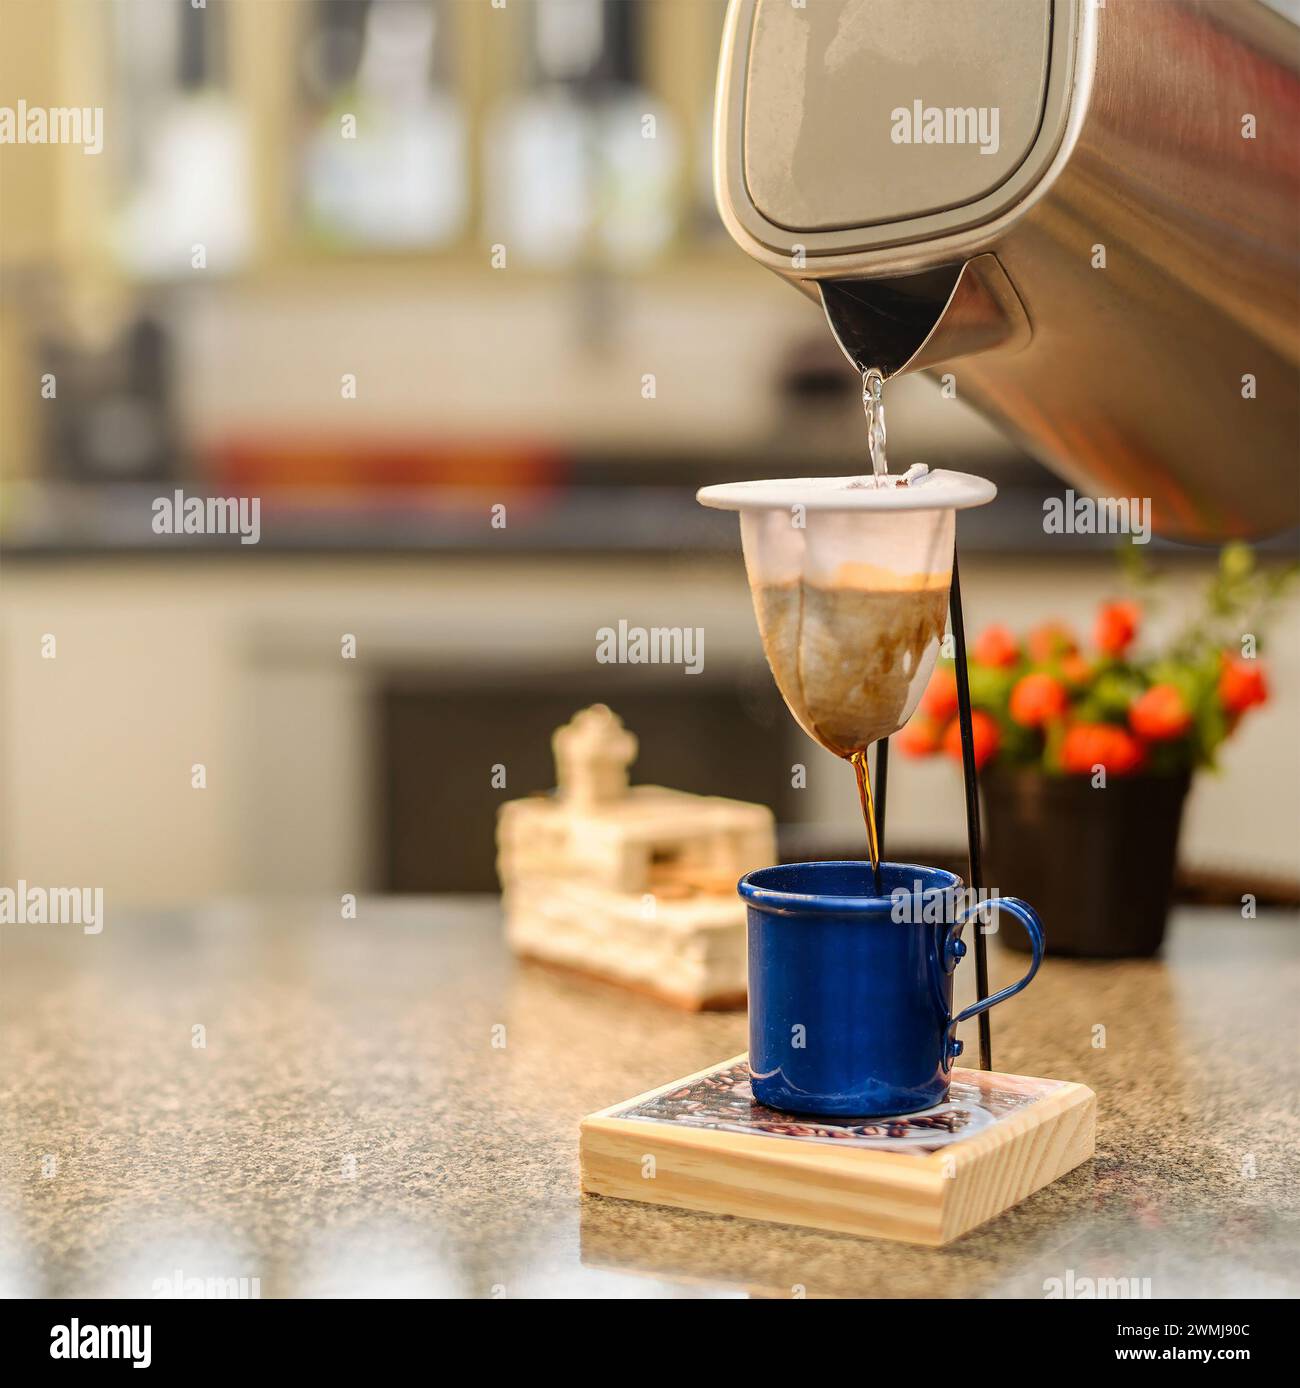 Verser de l'eau chaude dans une passoire à café en tissu. Préparer une portion individuelle de café noir. Banque D'Images